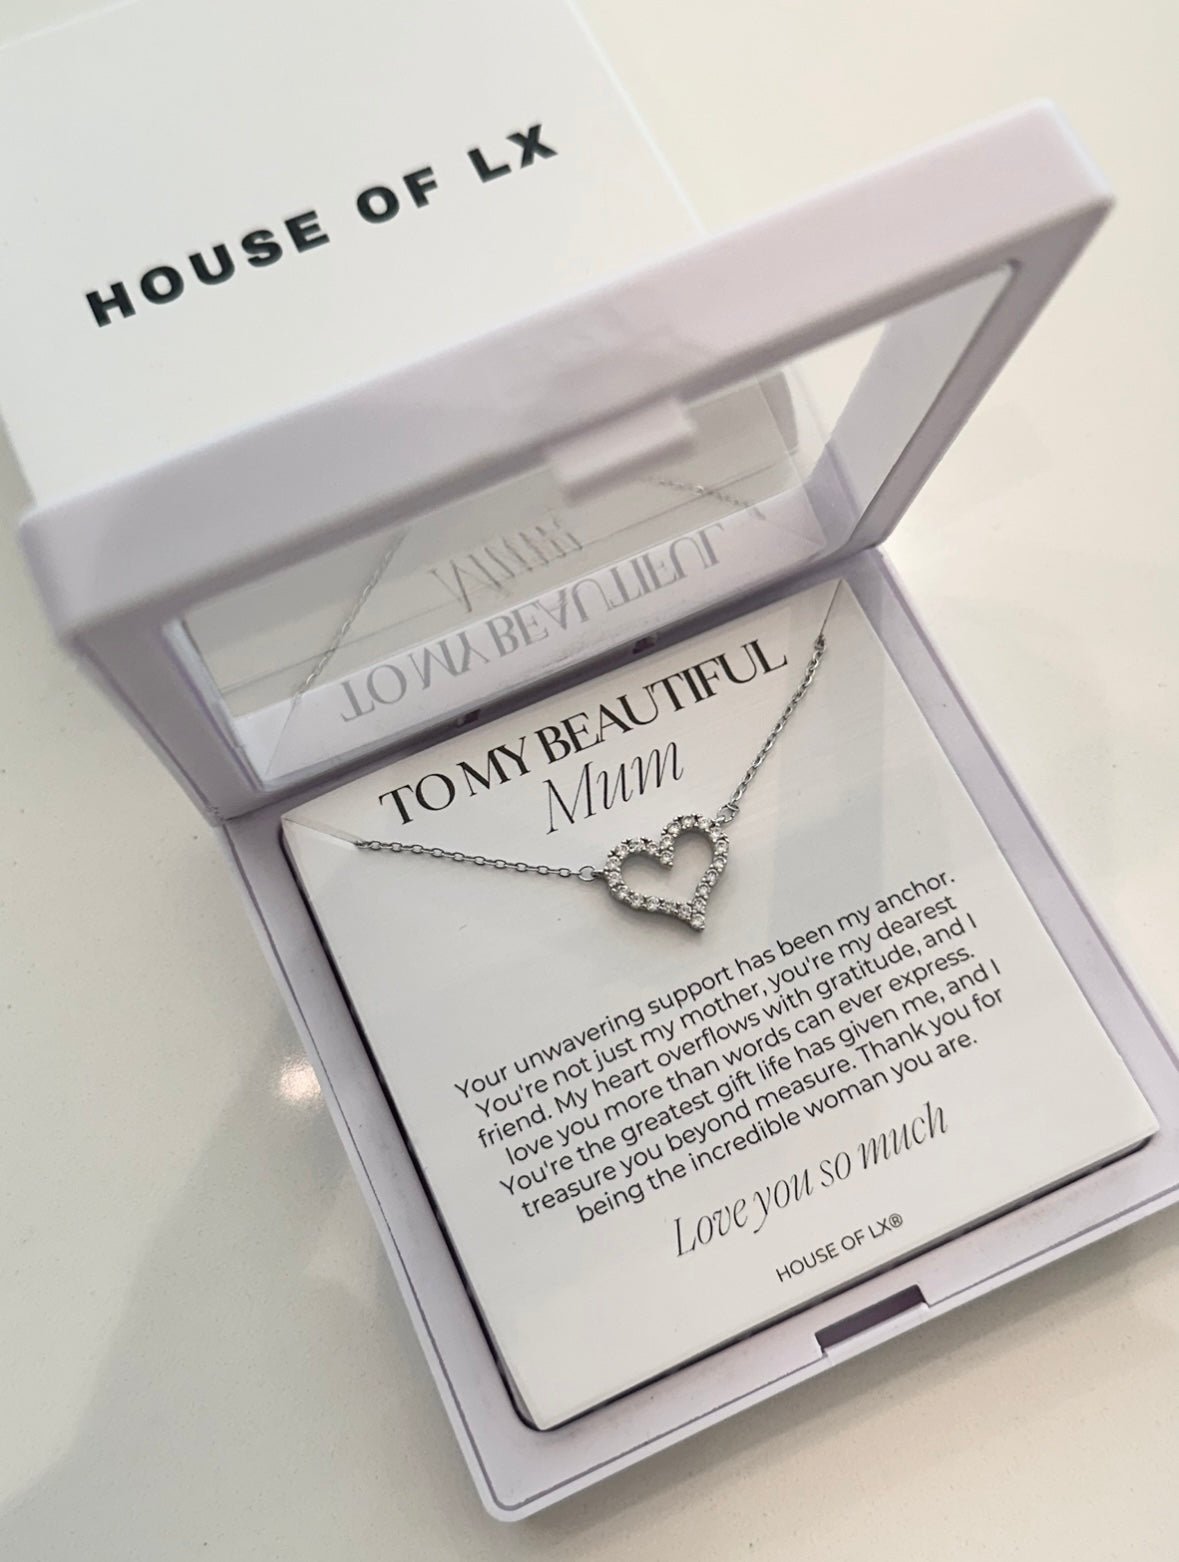 Gift for Mum - Love Heart Necklace - HouseofLx-18K White Gold